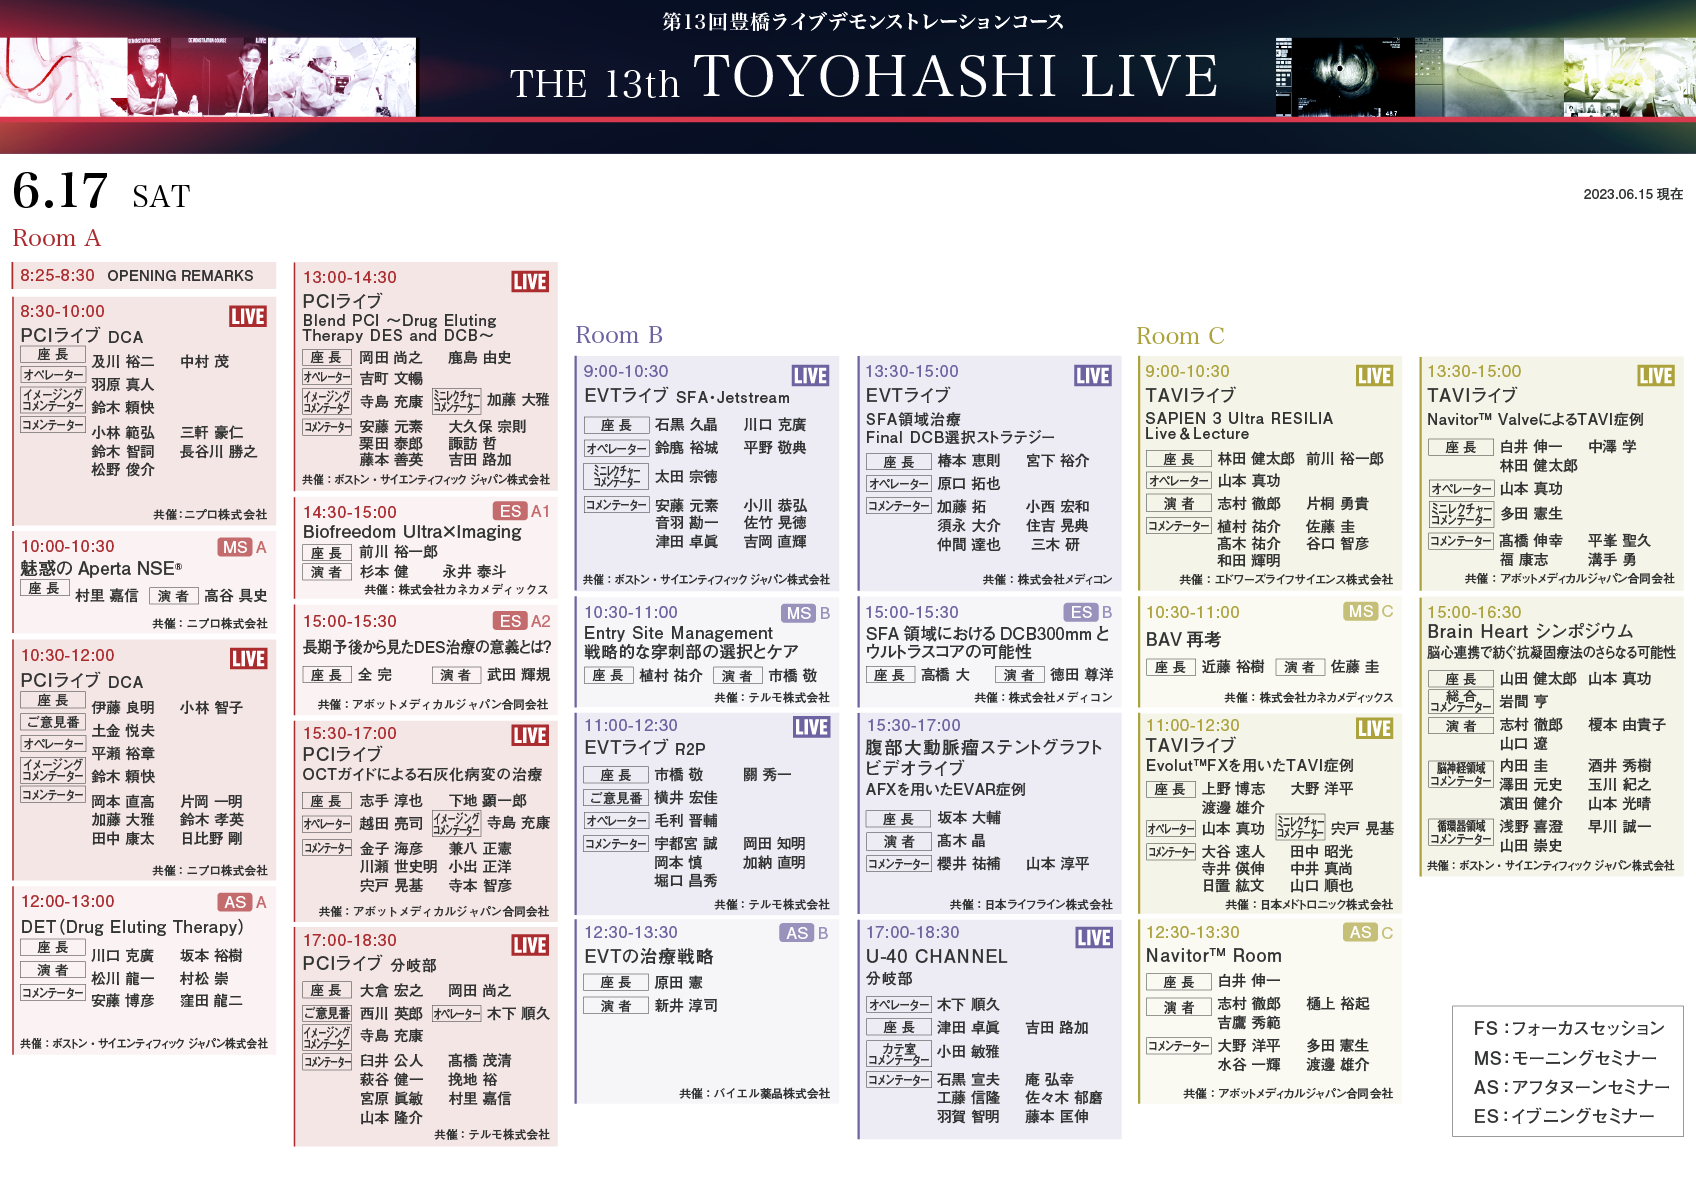 13TH TOYOHASHI LIVE